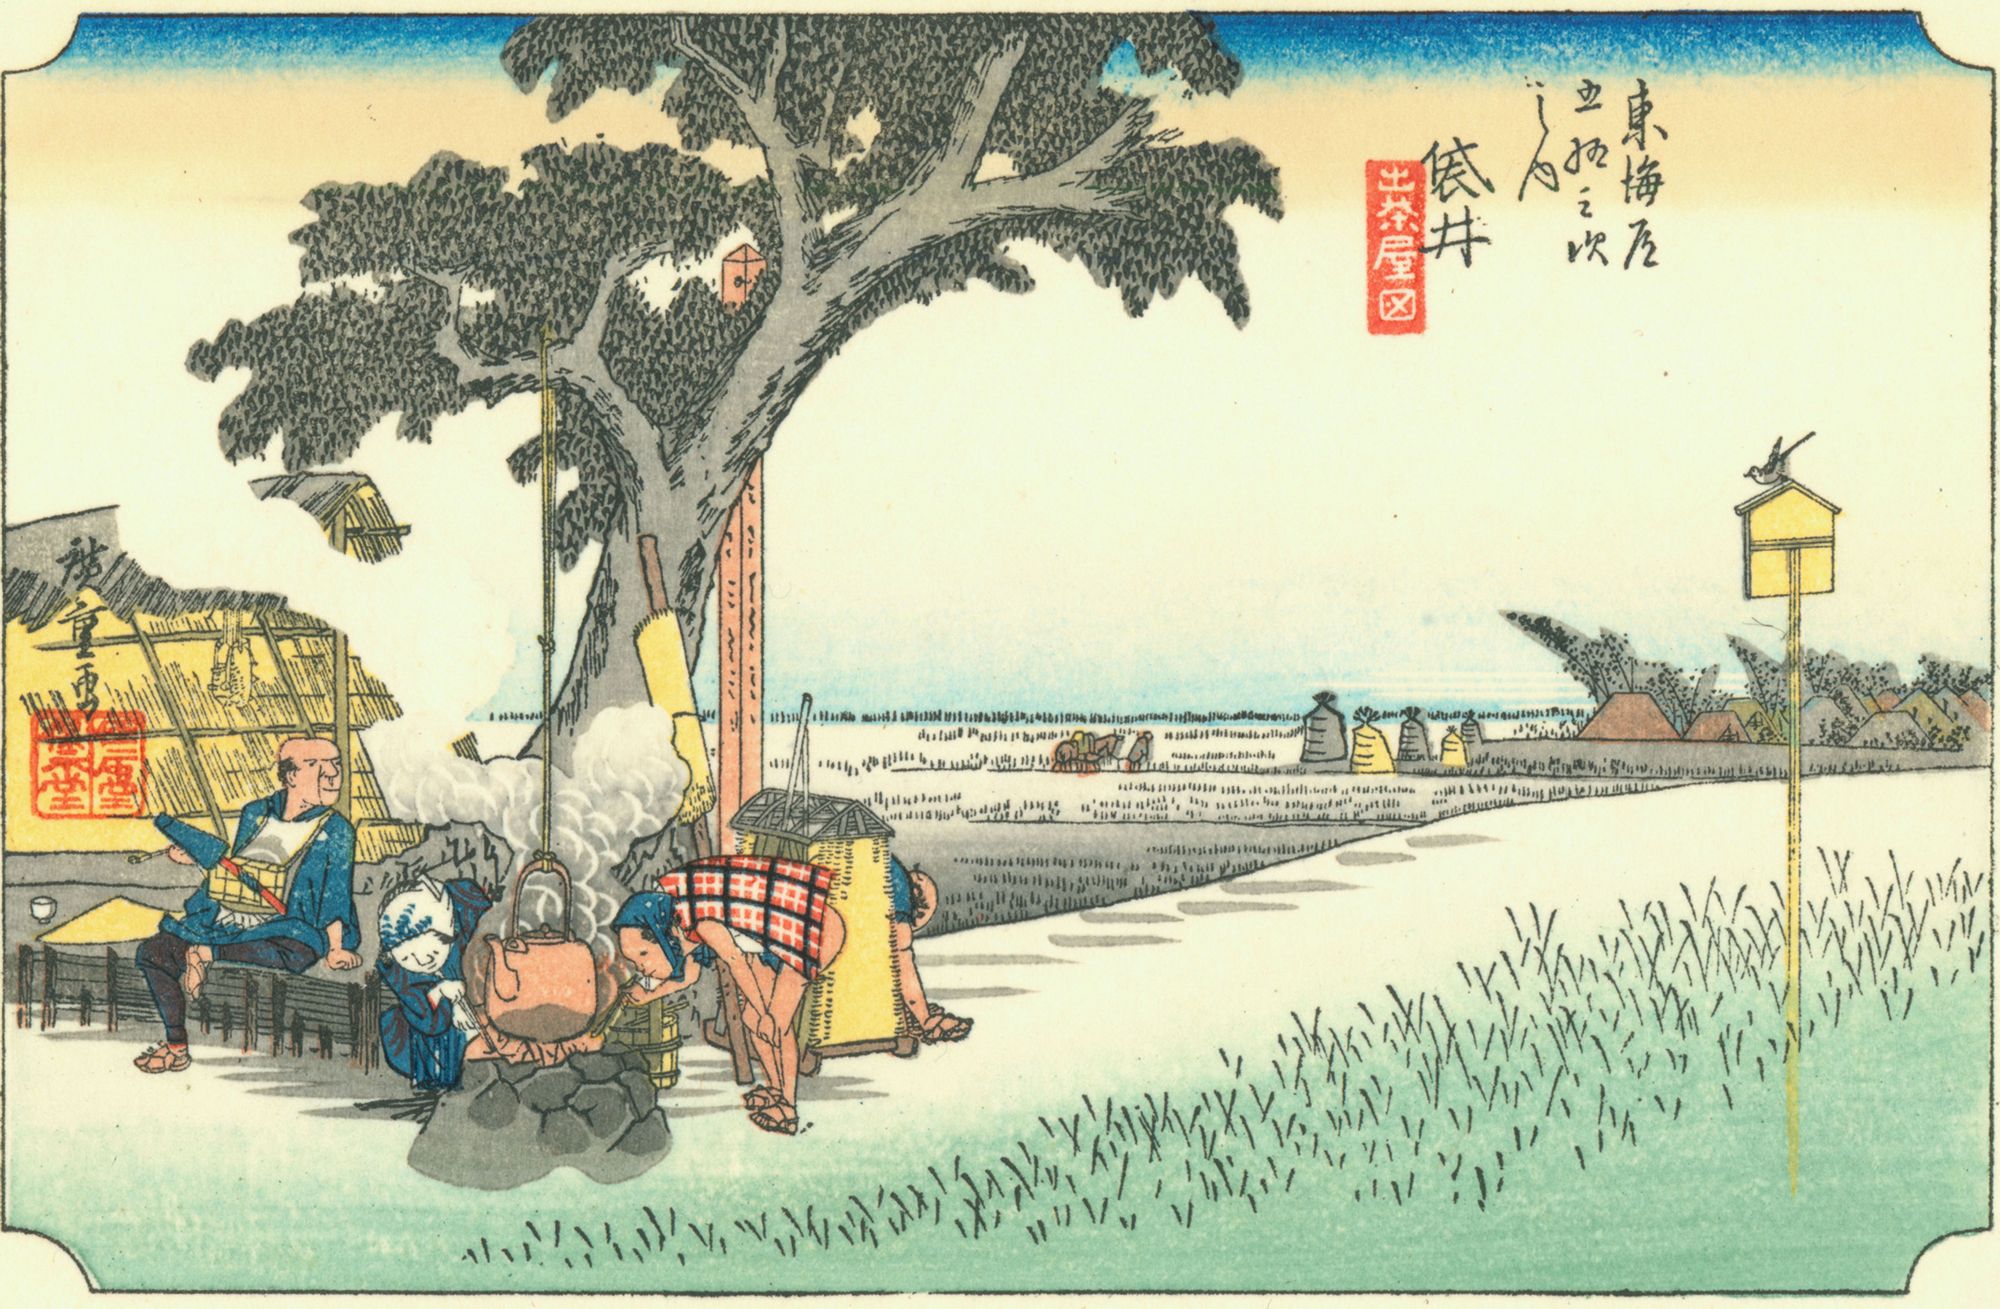 Гравюра из серии «53 станции Токайдо» Утагавы Хиросигэ, написанная им после путешествия в 1832 году по дороге Токайдо между Эдо и Киото